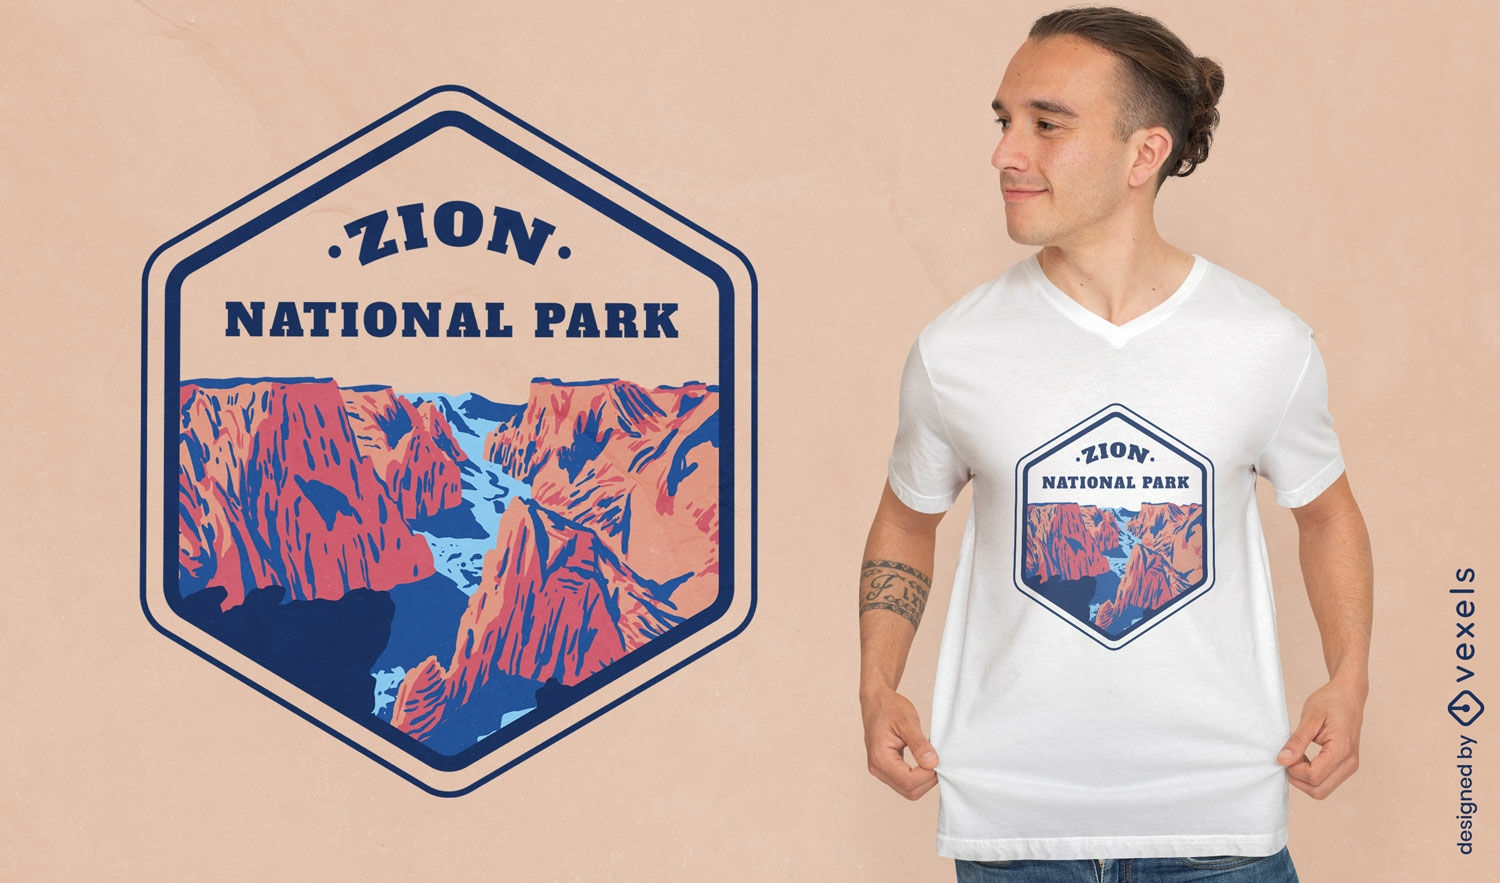 Zion national park landscape t-shirt design